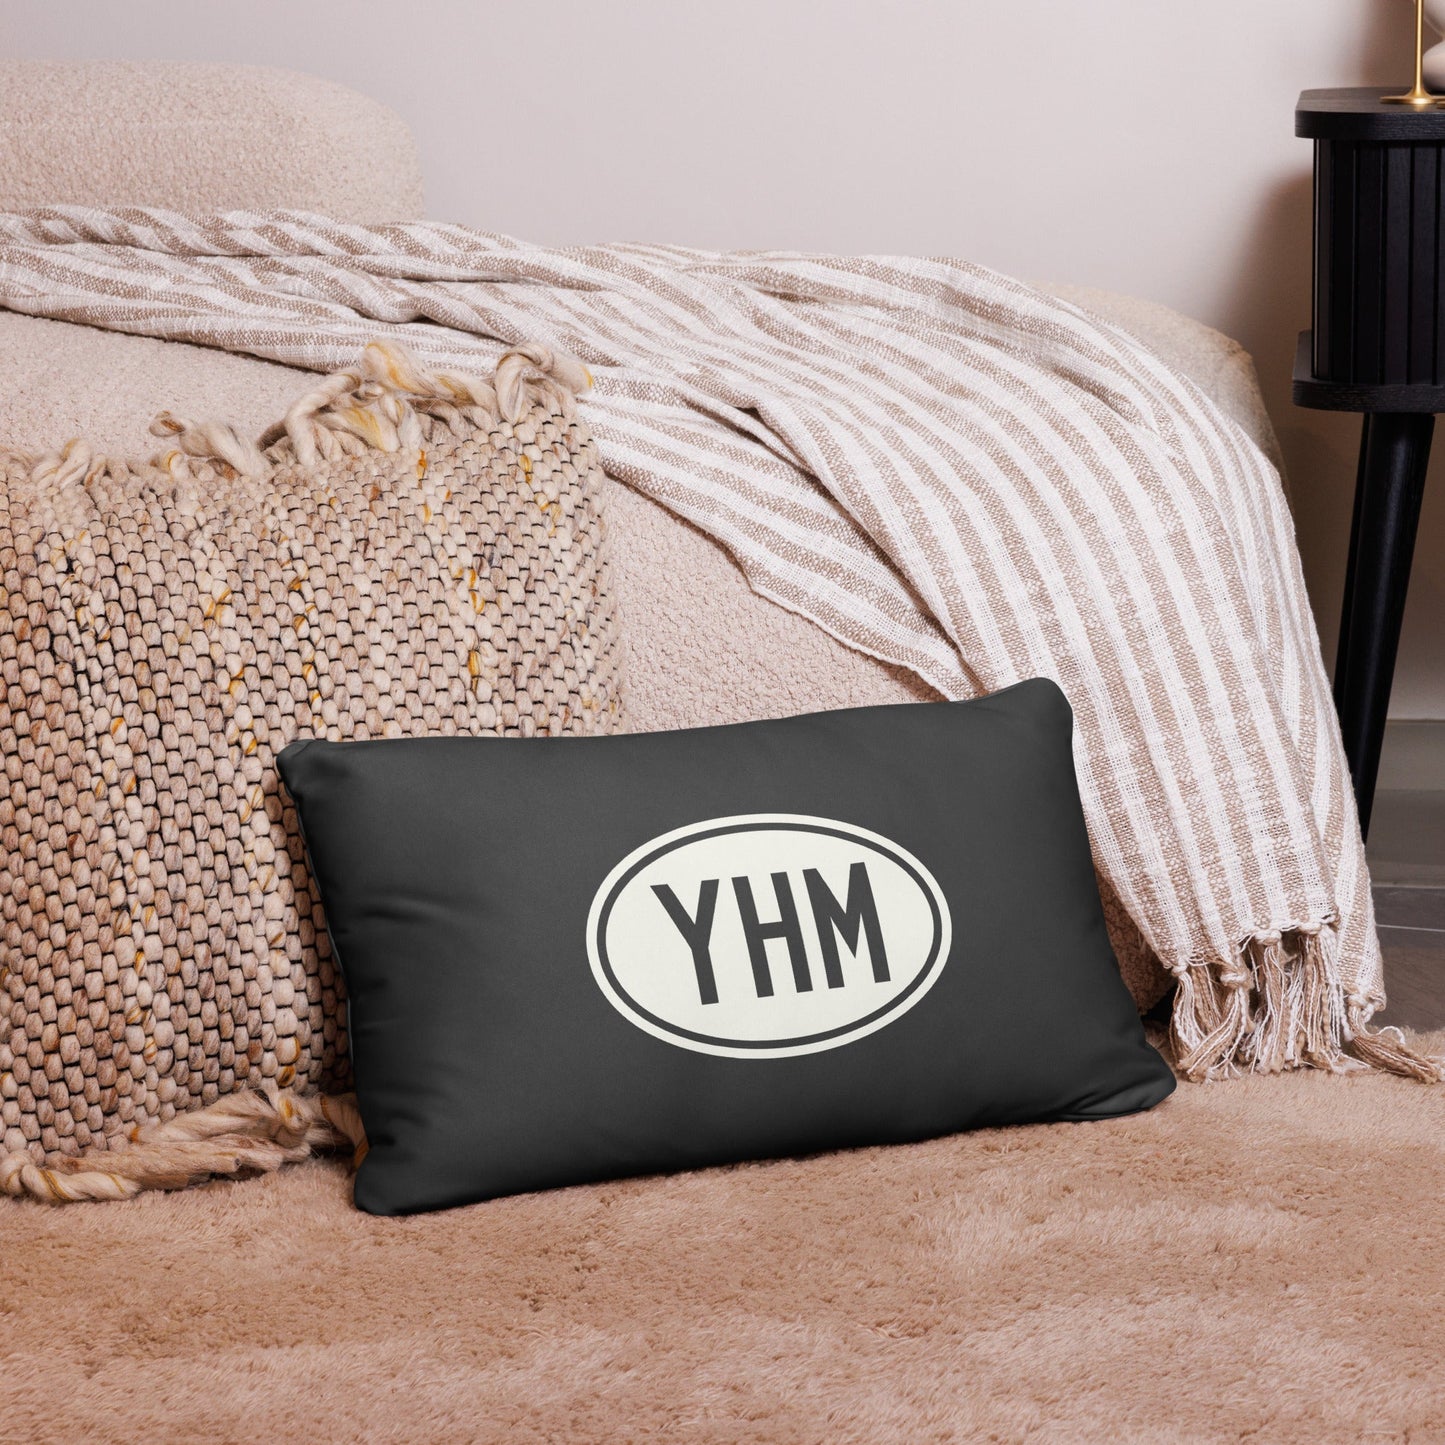 Unique Travel Gift Throw Pillow - White Oval • SJC San Jose • YHM Designs - Image 05